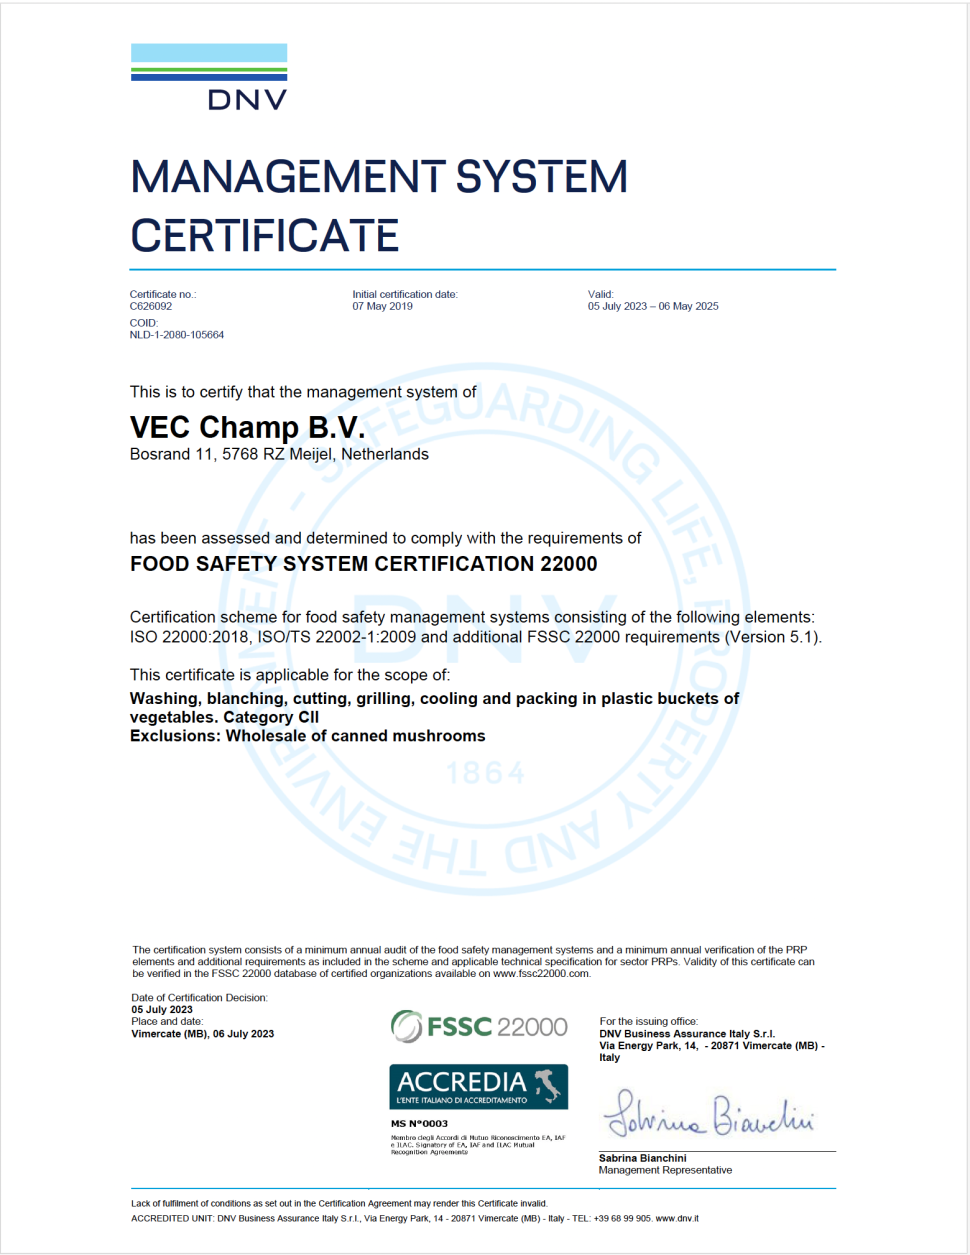 FSSC certificaat 22000 VEC Champ BV